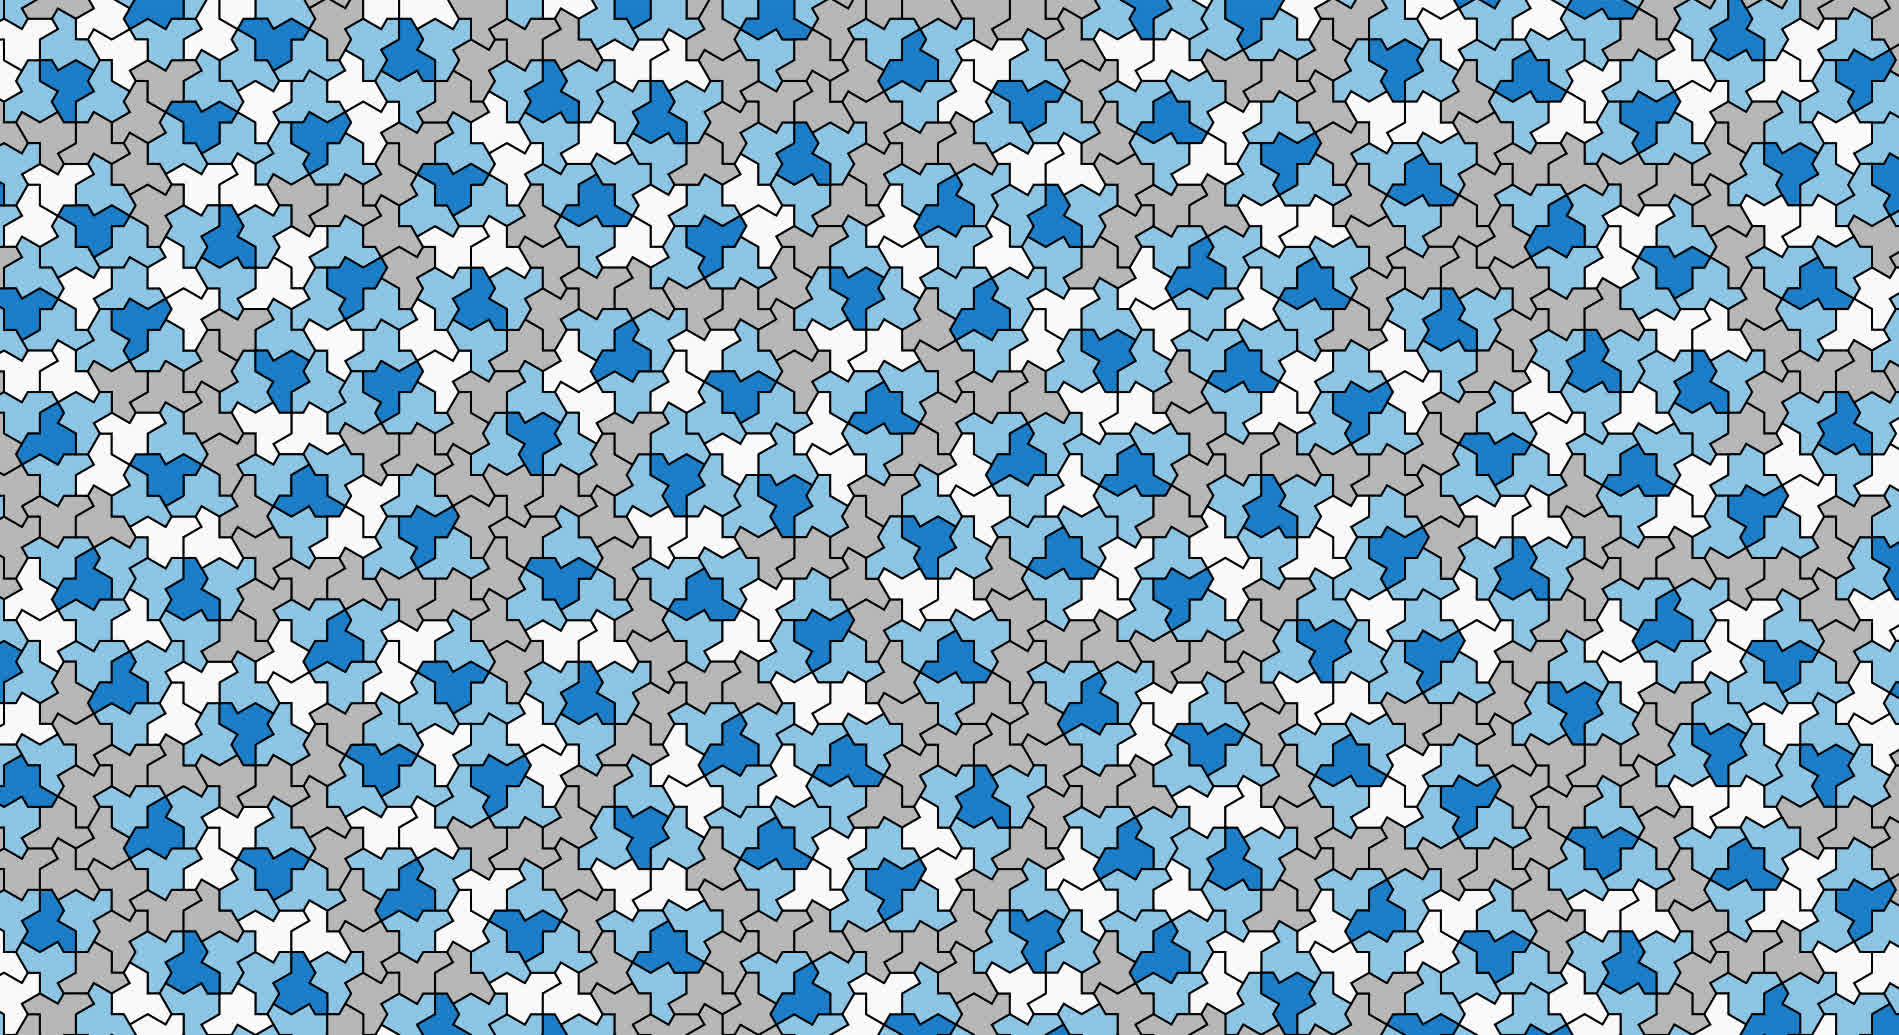 Les mathématiciens créent un motif non répétitif à partir d’un nouveau polygone à 13 côtés surnommé “le chapeau”